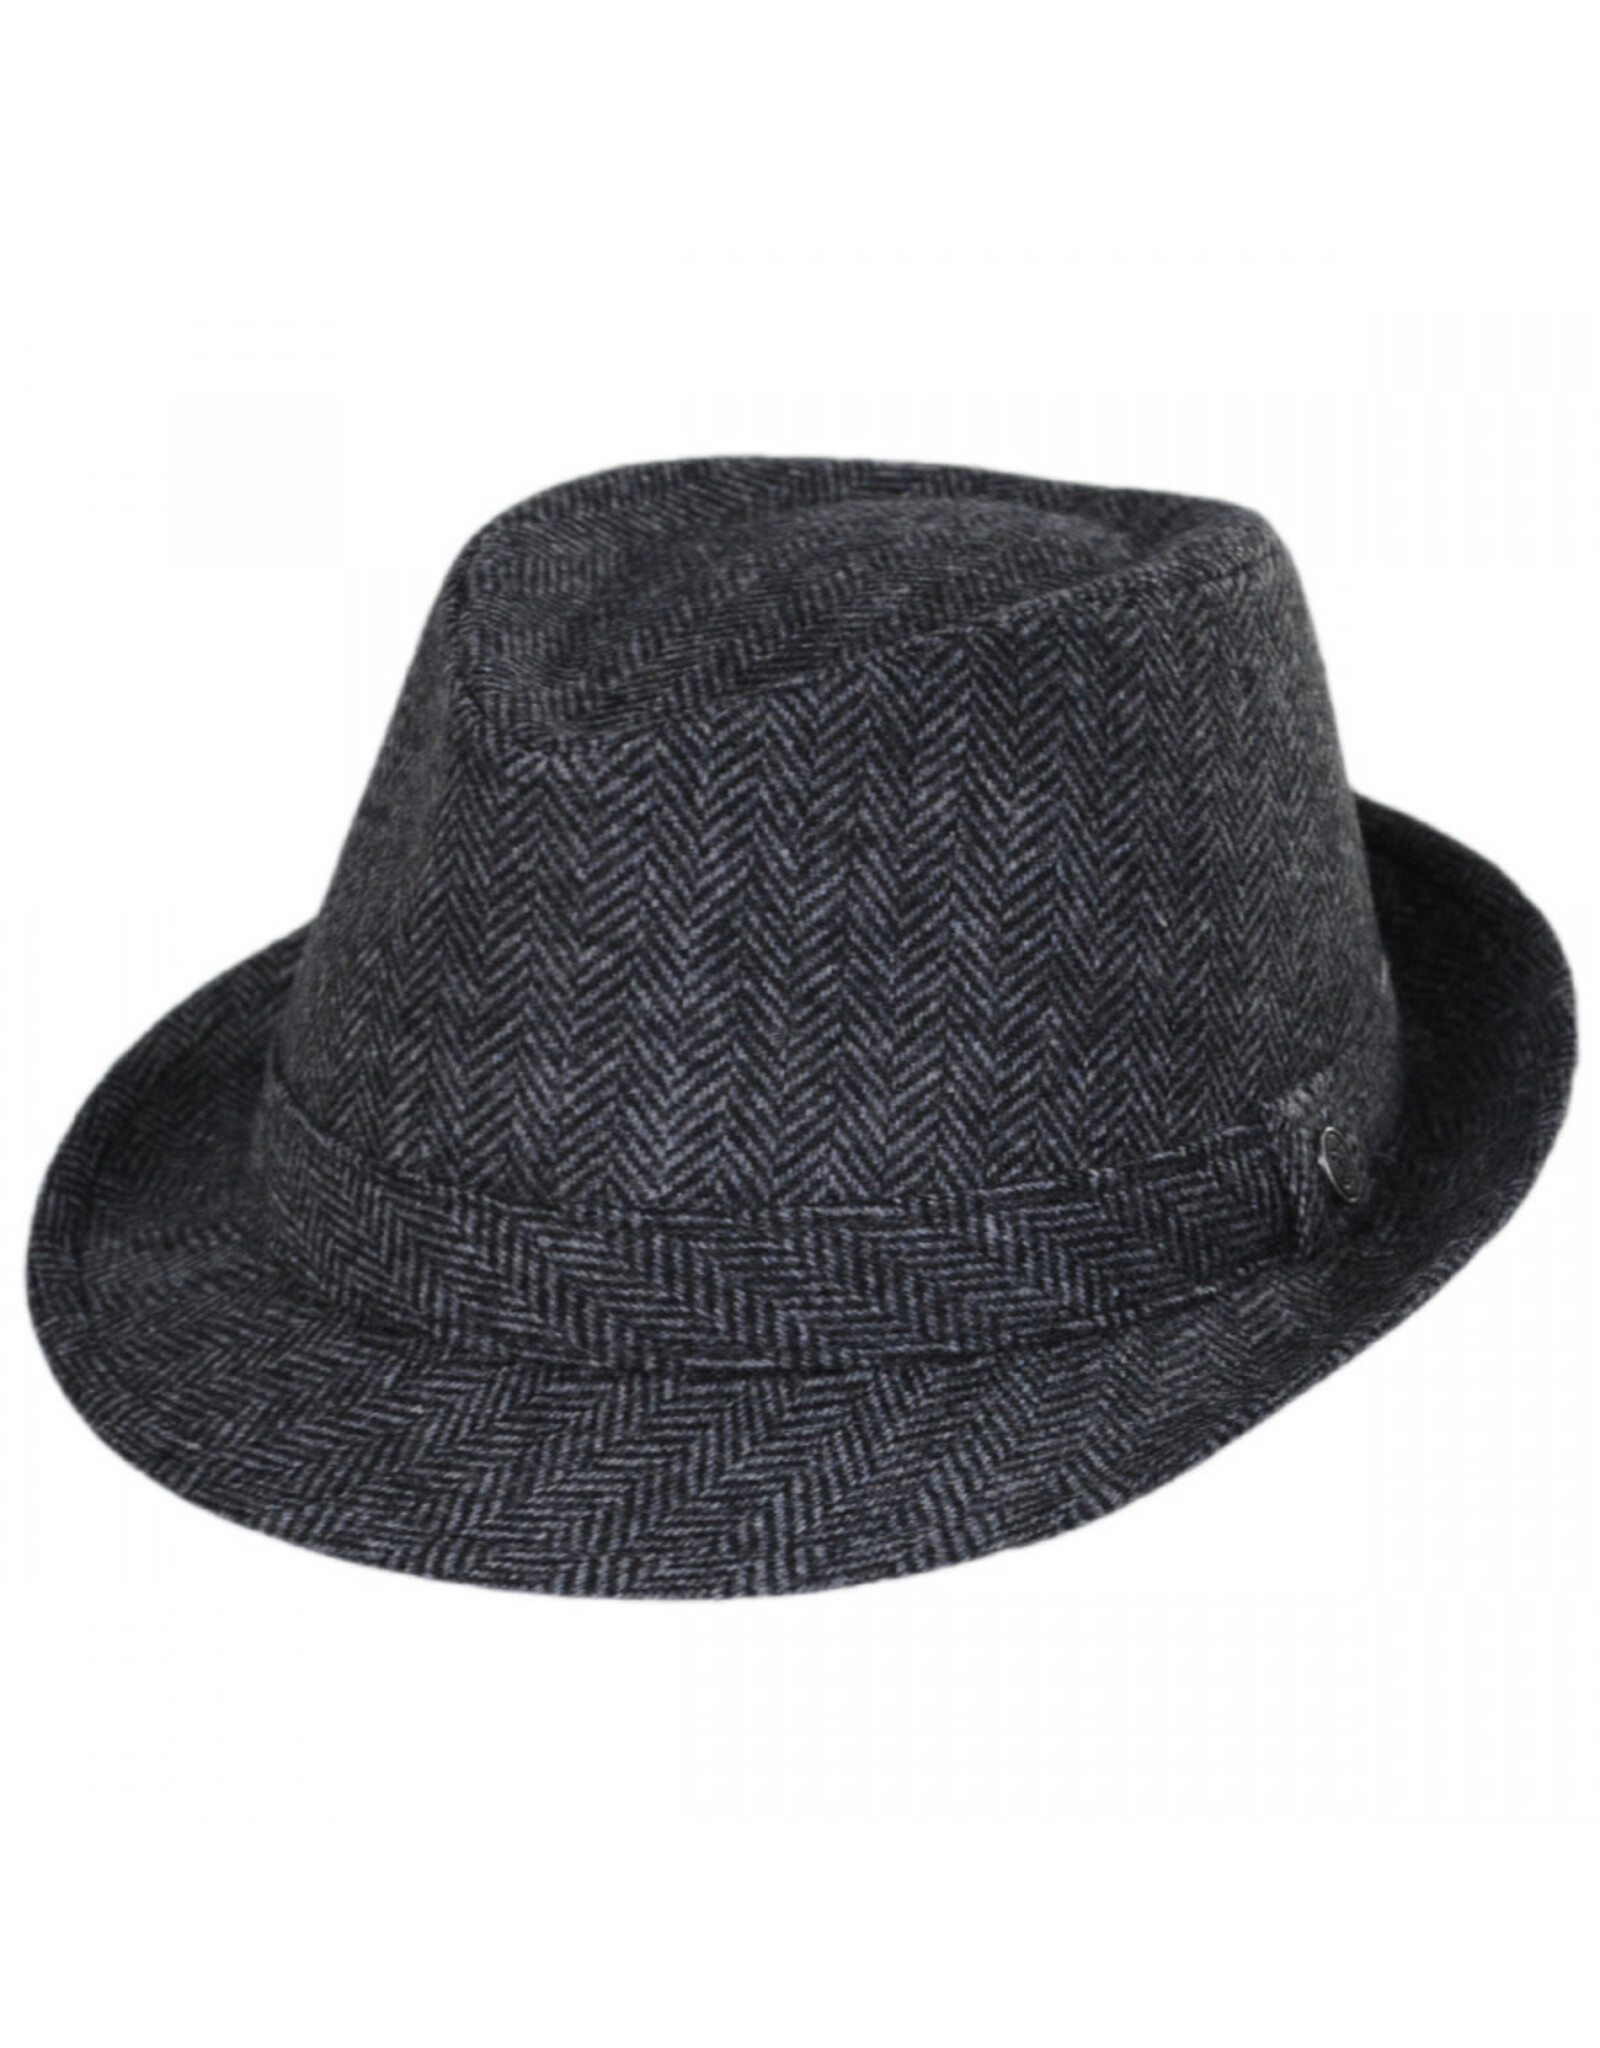 Jaxon Hats, Inc. Md Herringbone Wool Trilby Fedora Hat